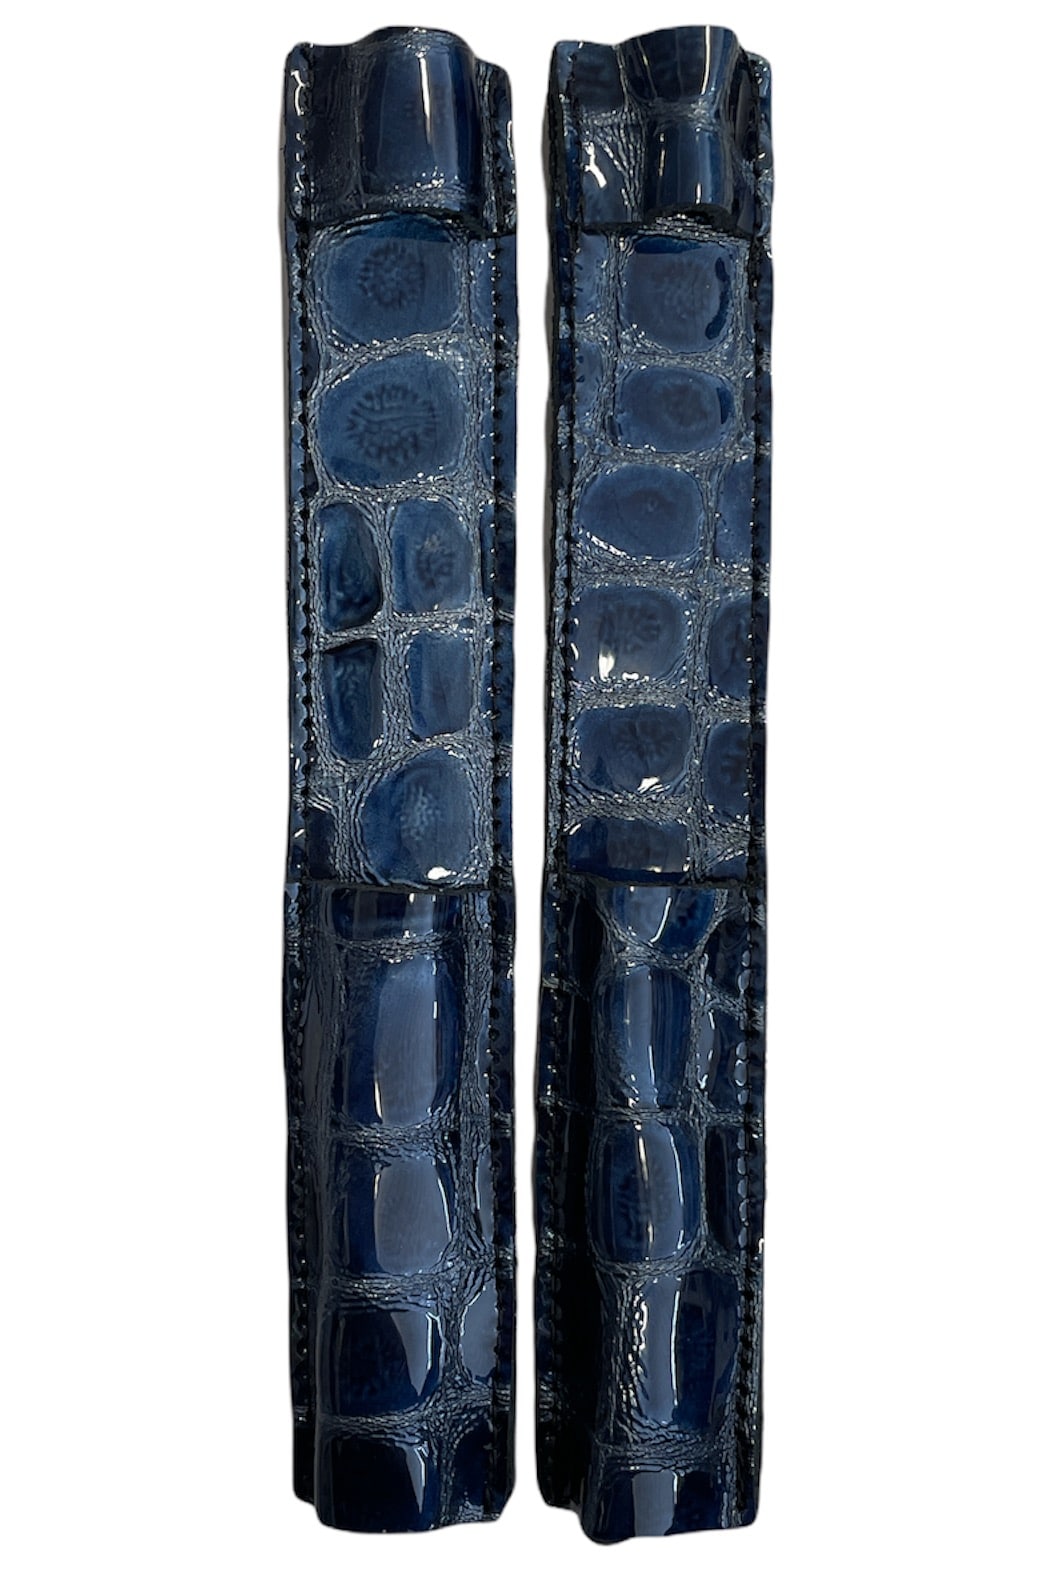 Celeris Spur Protectors - Patent Blue Croc